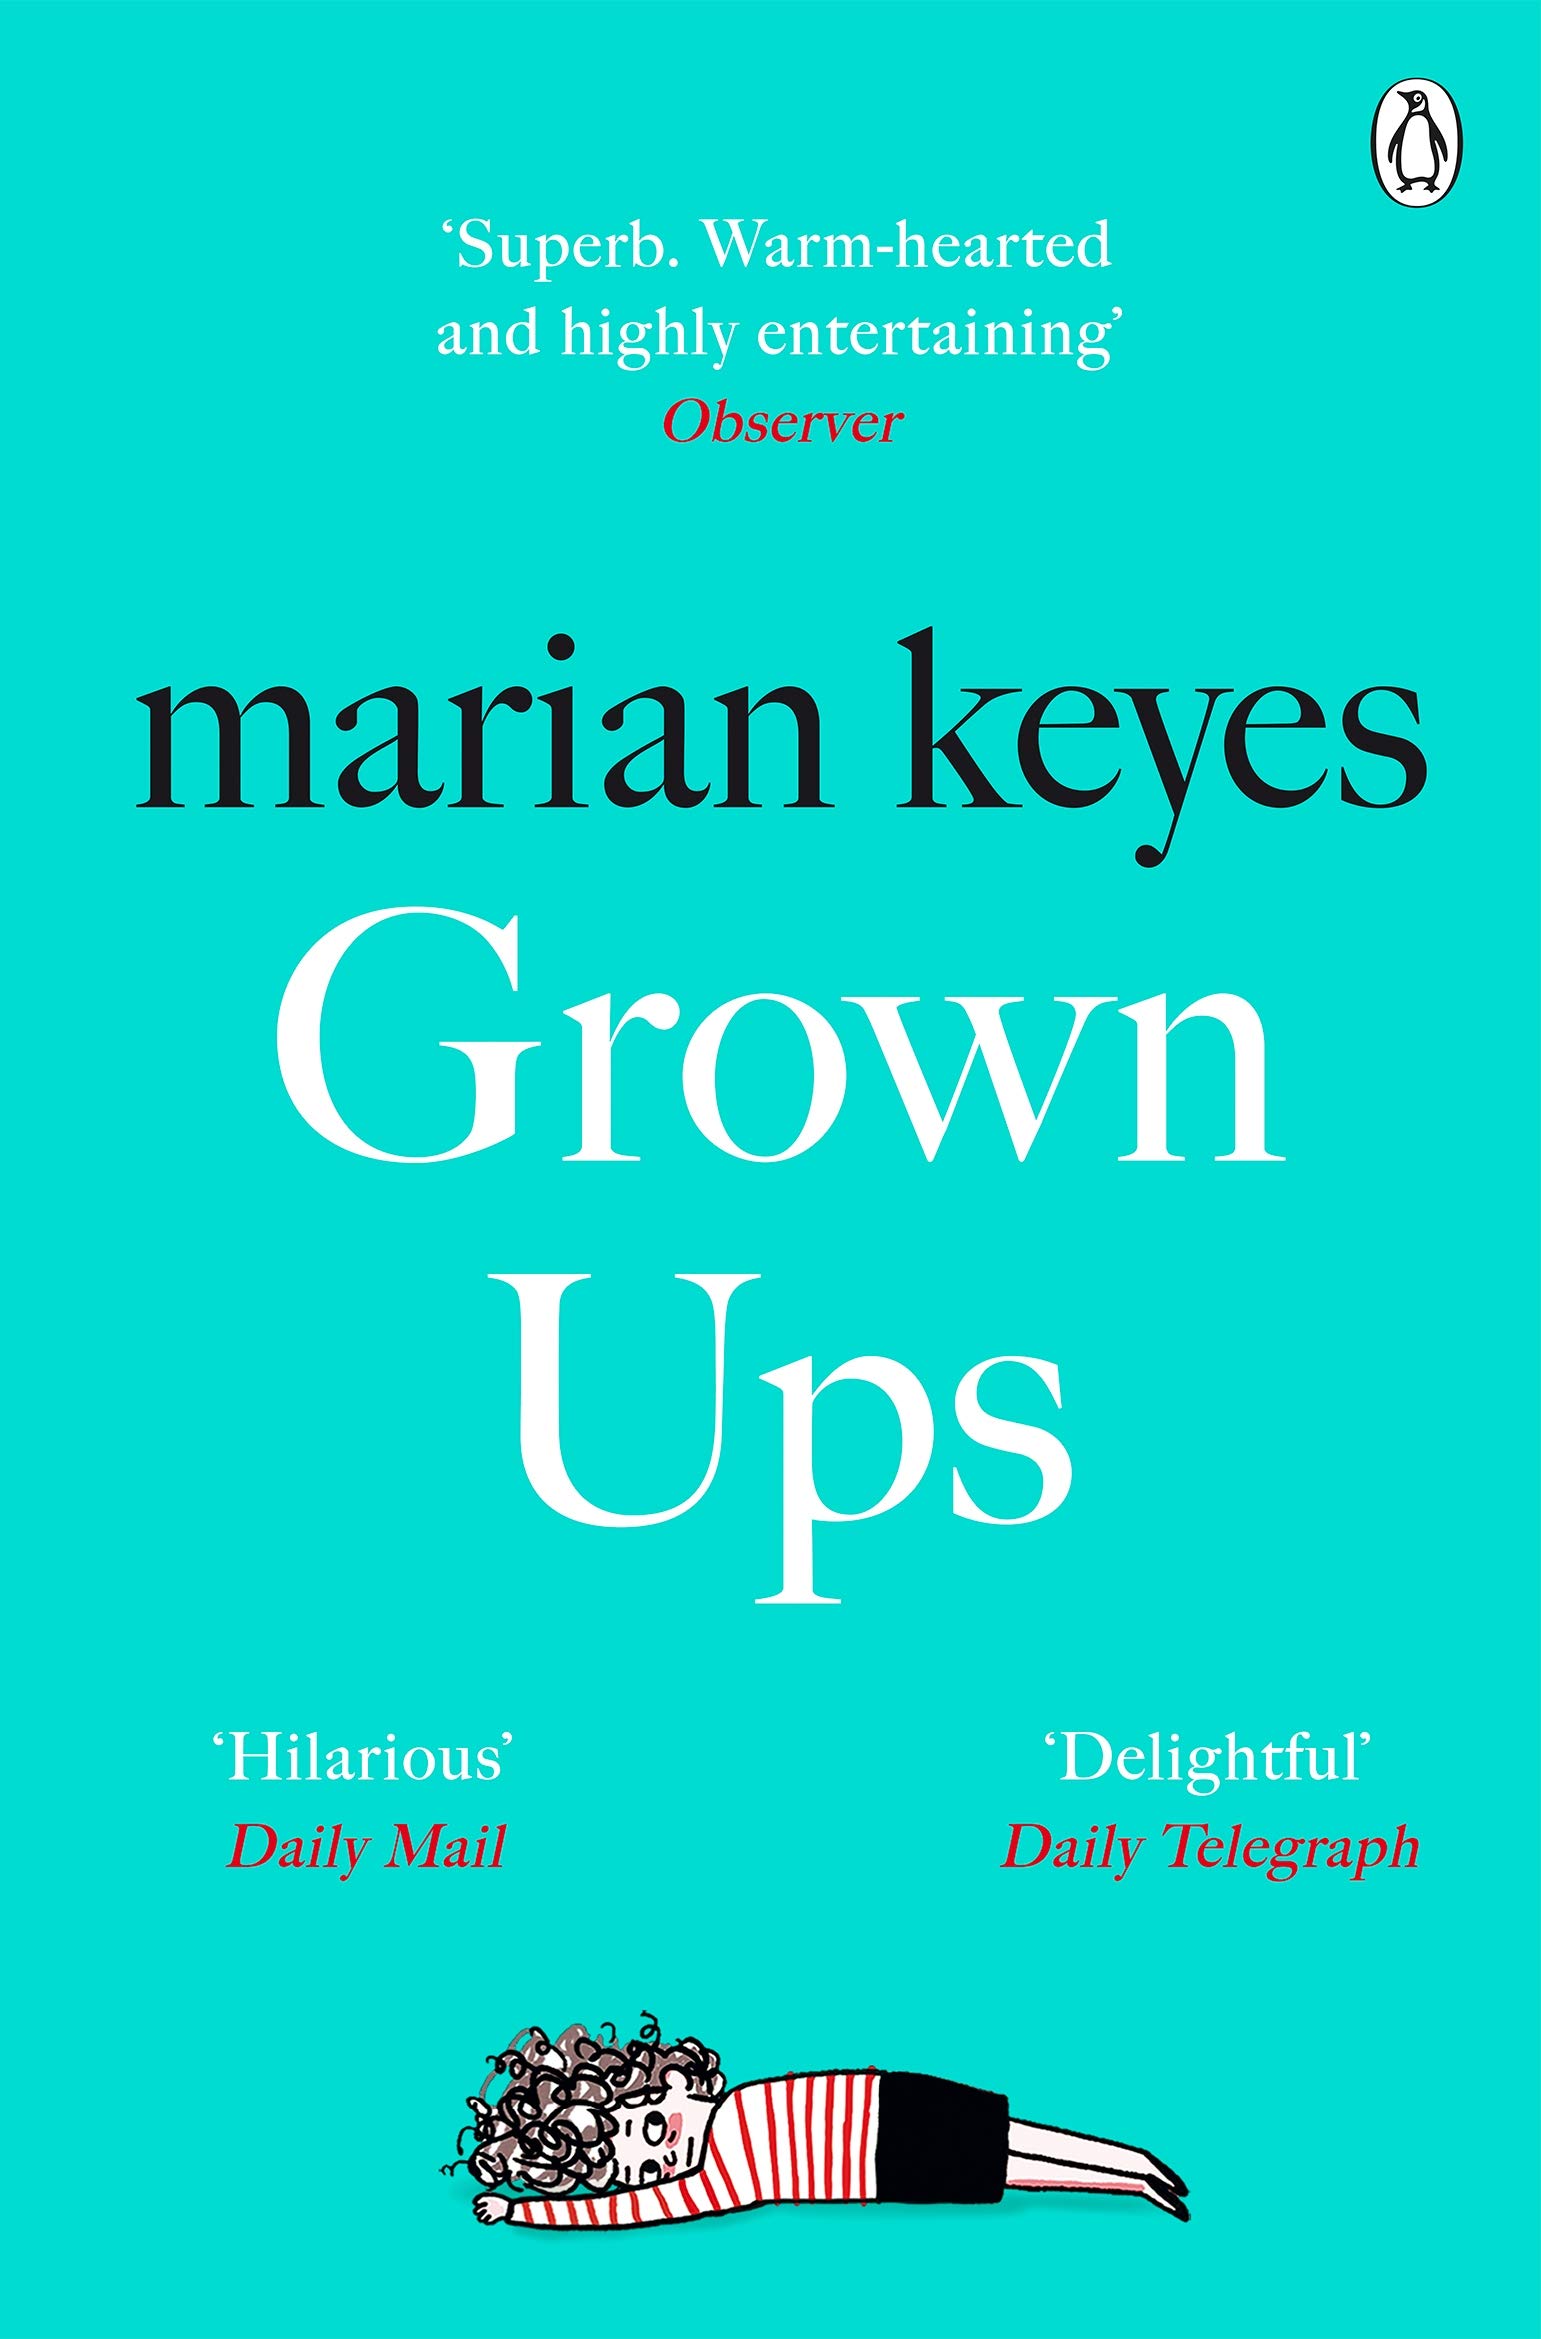 Grown Ups | Marian Keyes